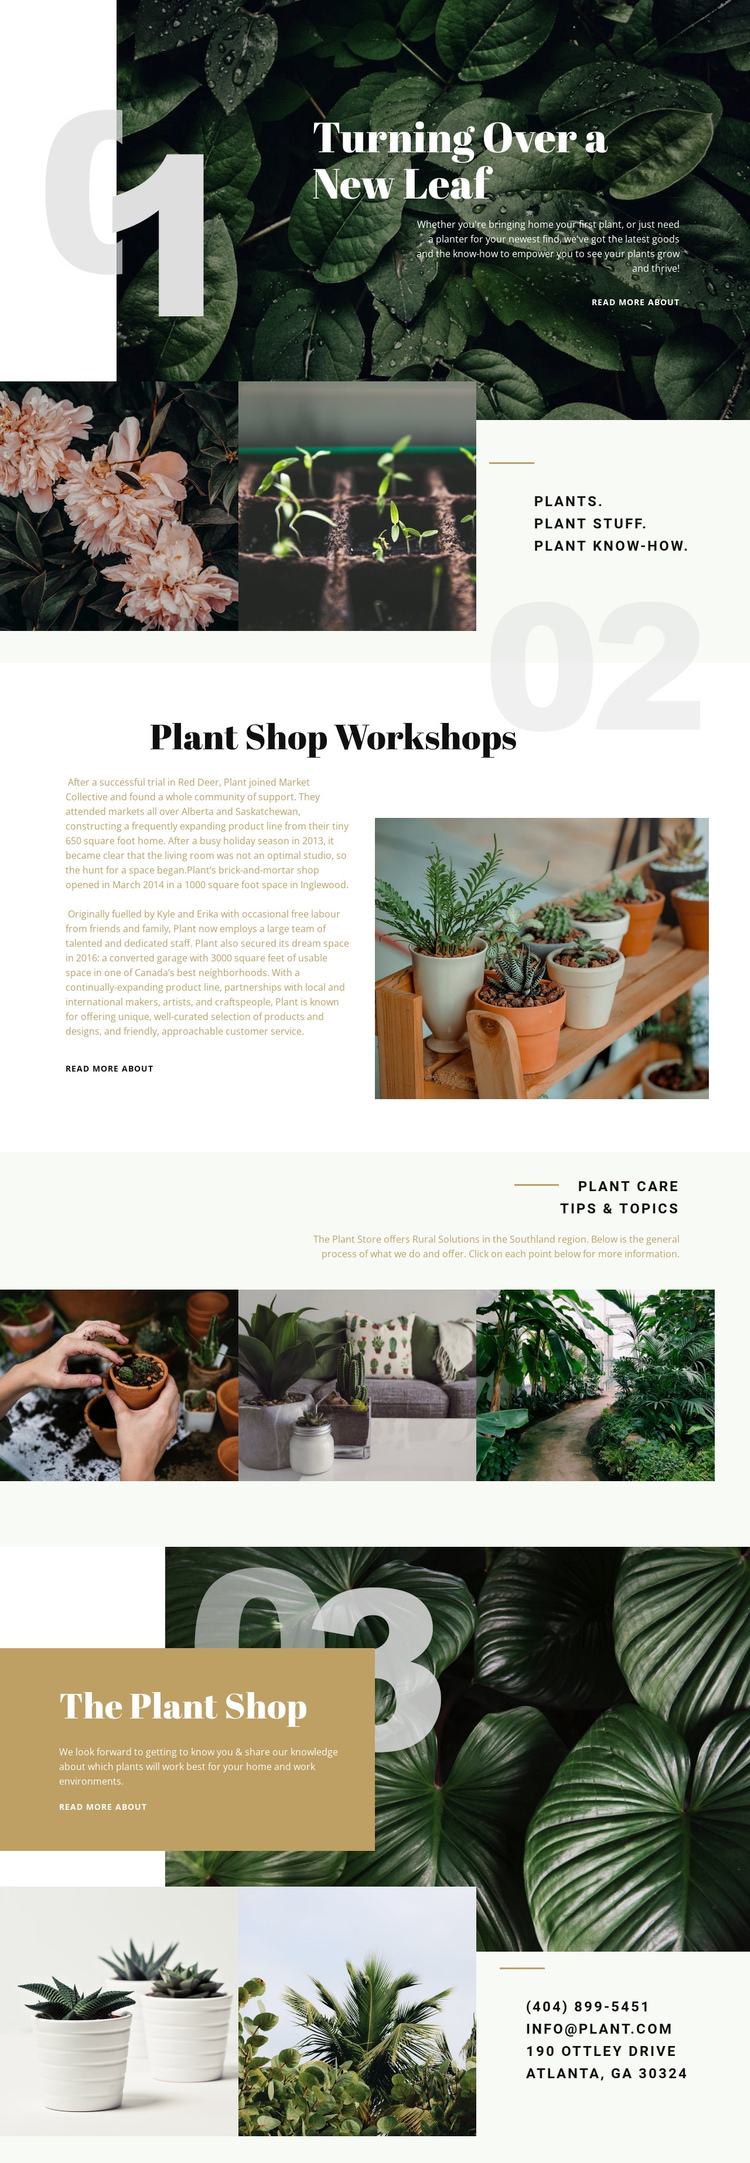 Plant Shop Website Builder Software